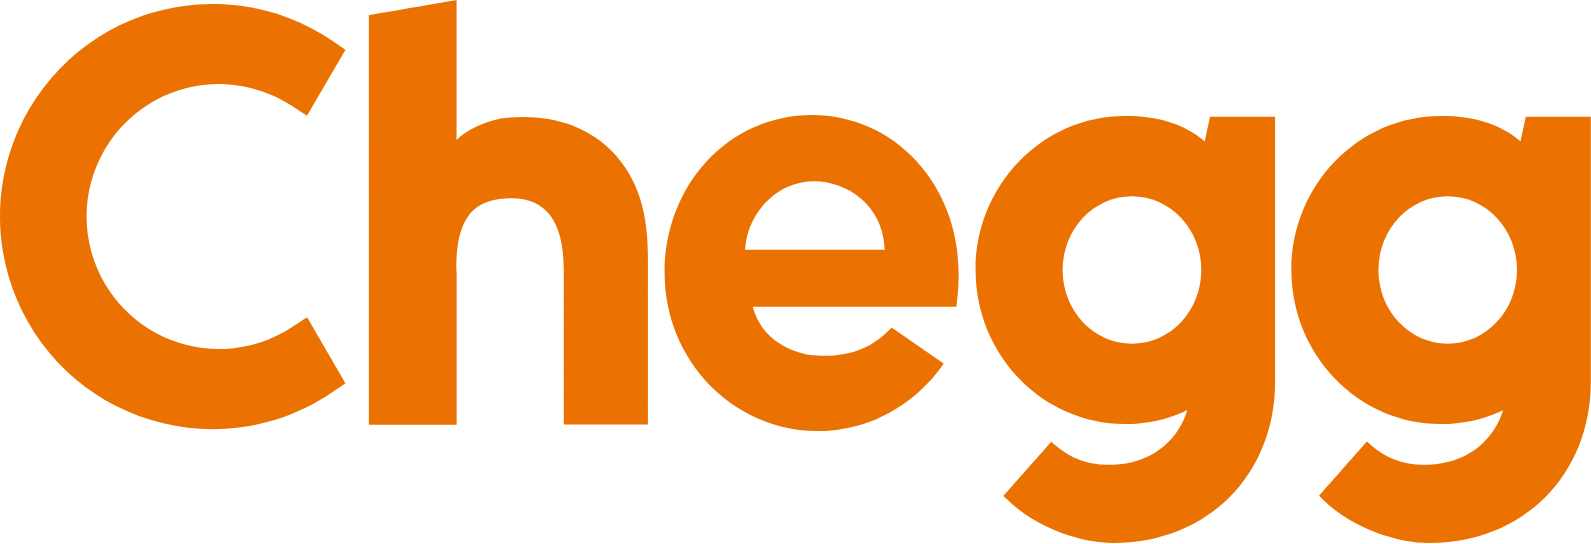 Chegg
 logo large (transparent PNG)